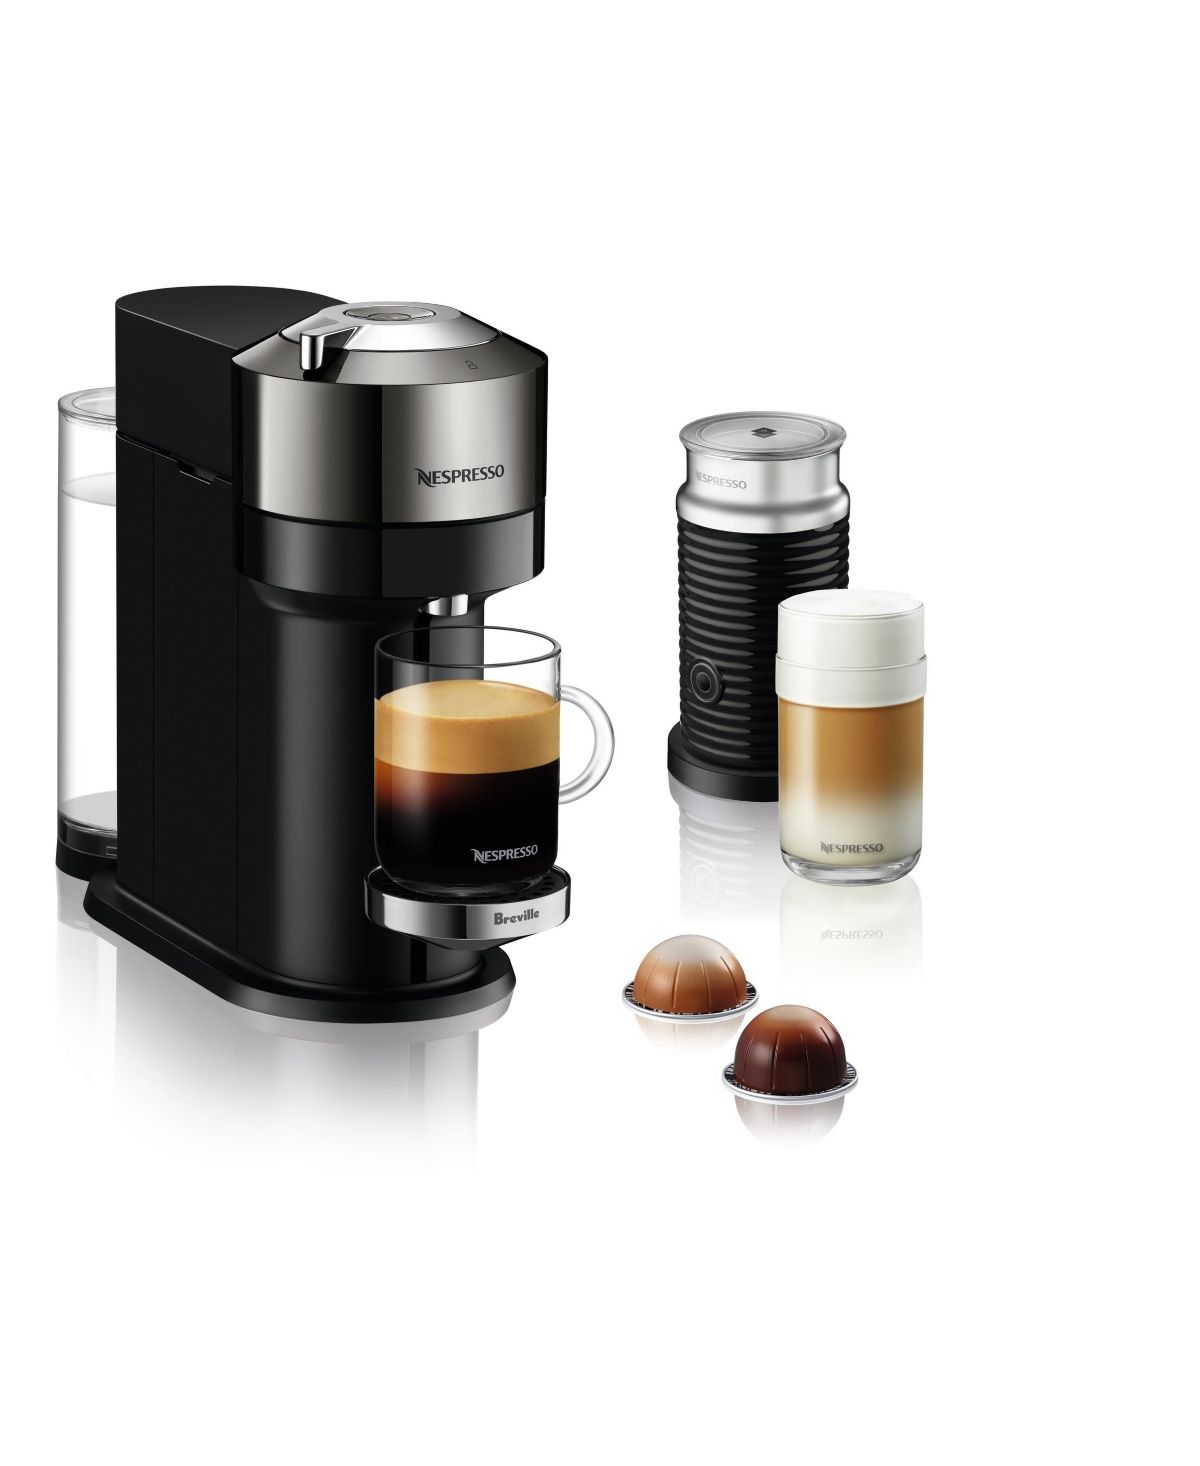 Nespresso Vertuo Next Deluxe Coffee and Espresso Maker by Breville, Dark Chrome with Aeroccino Milk  | Macys (US)